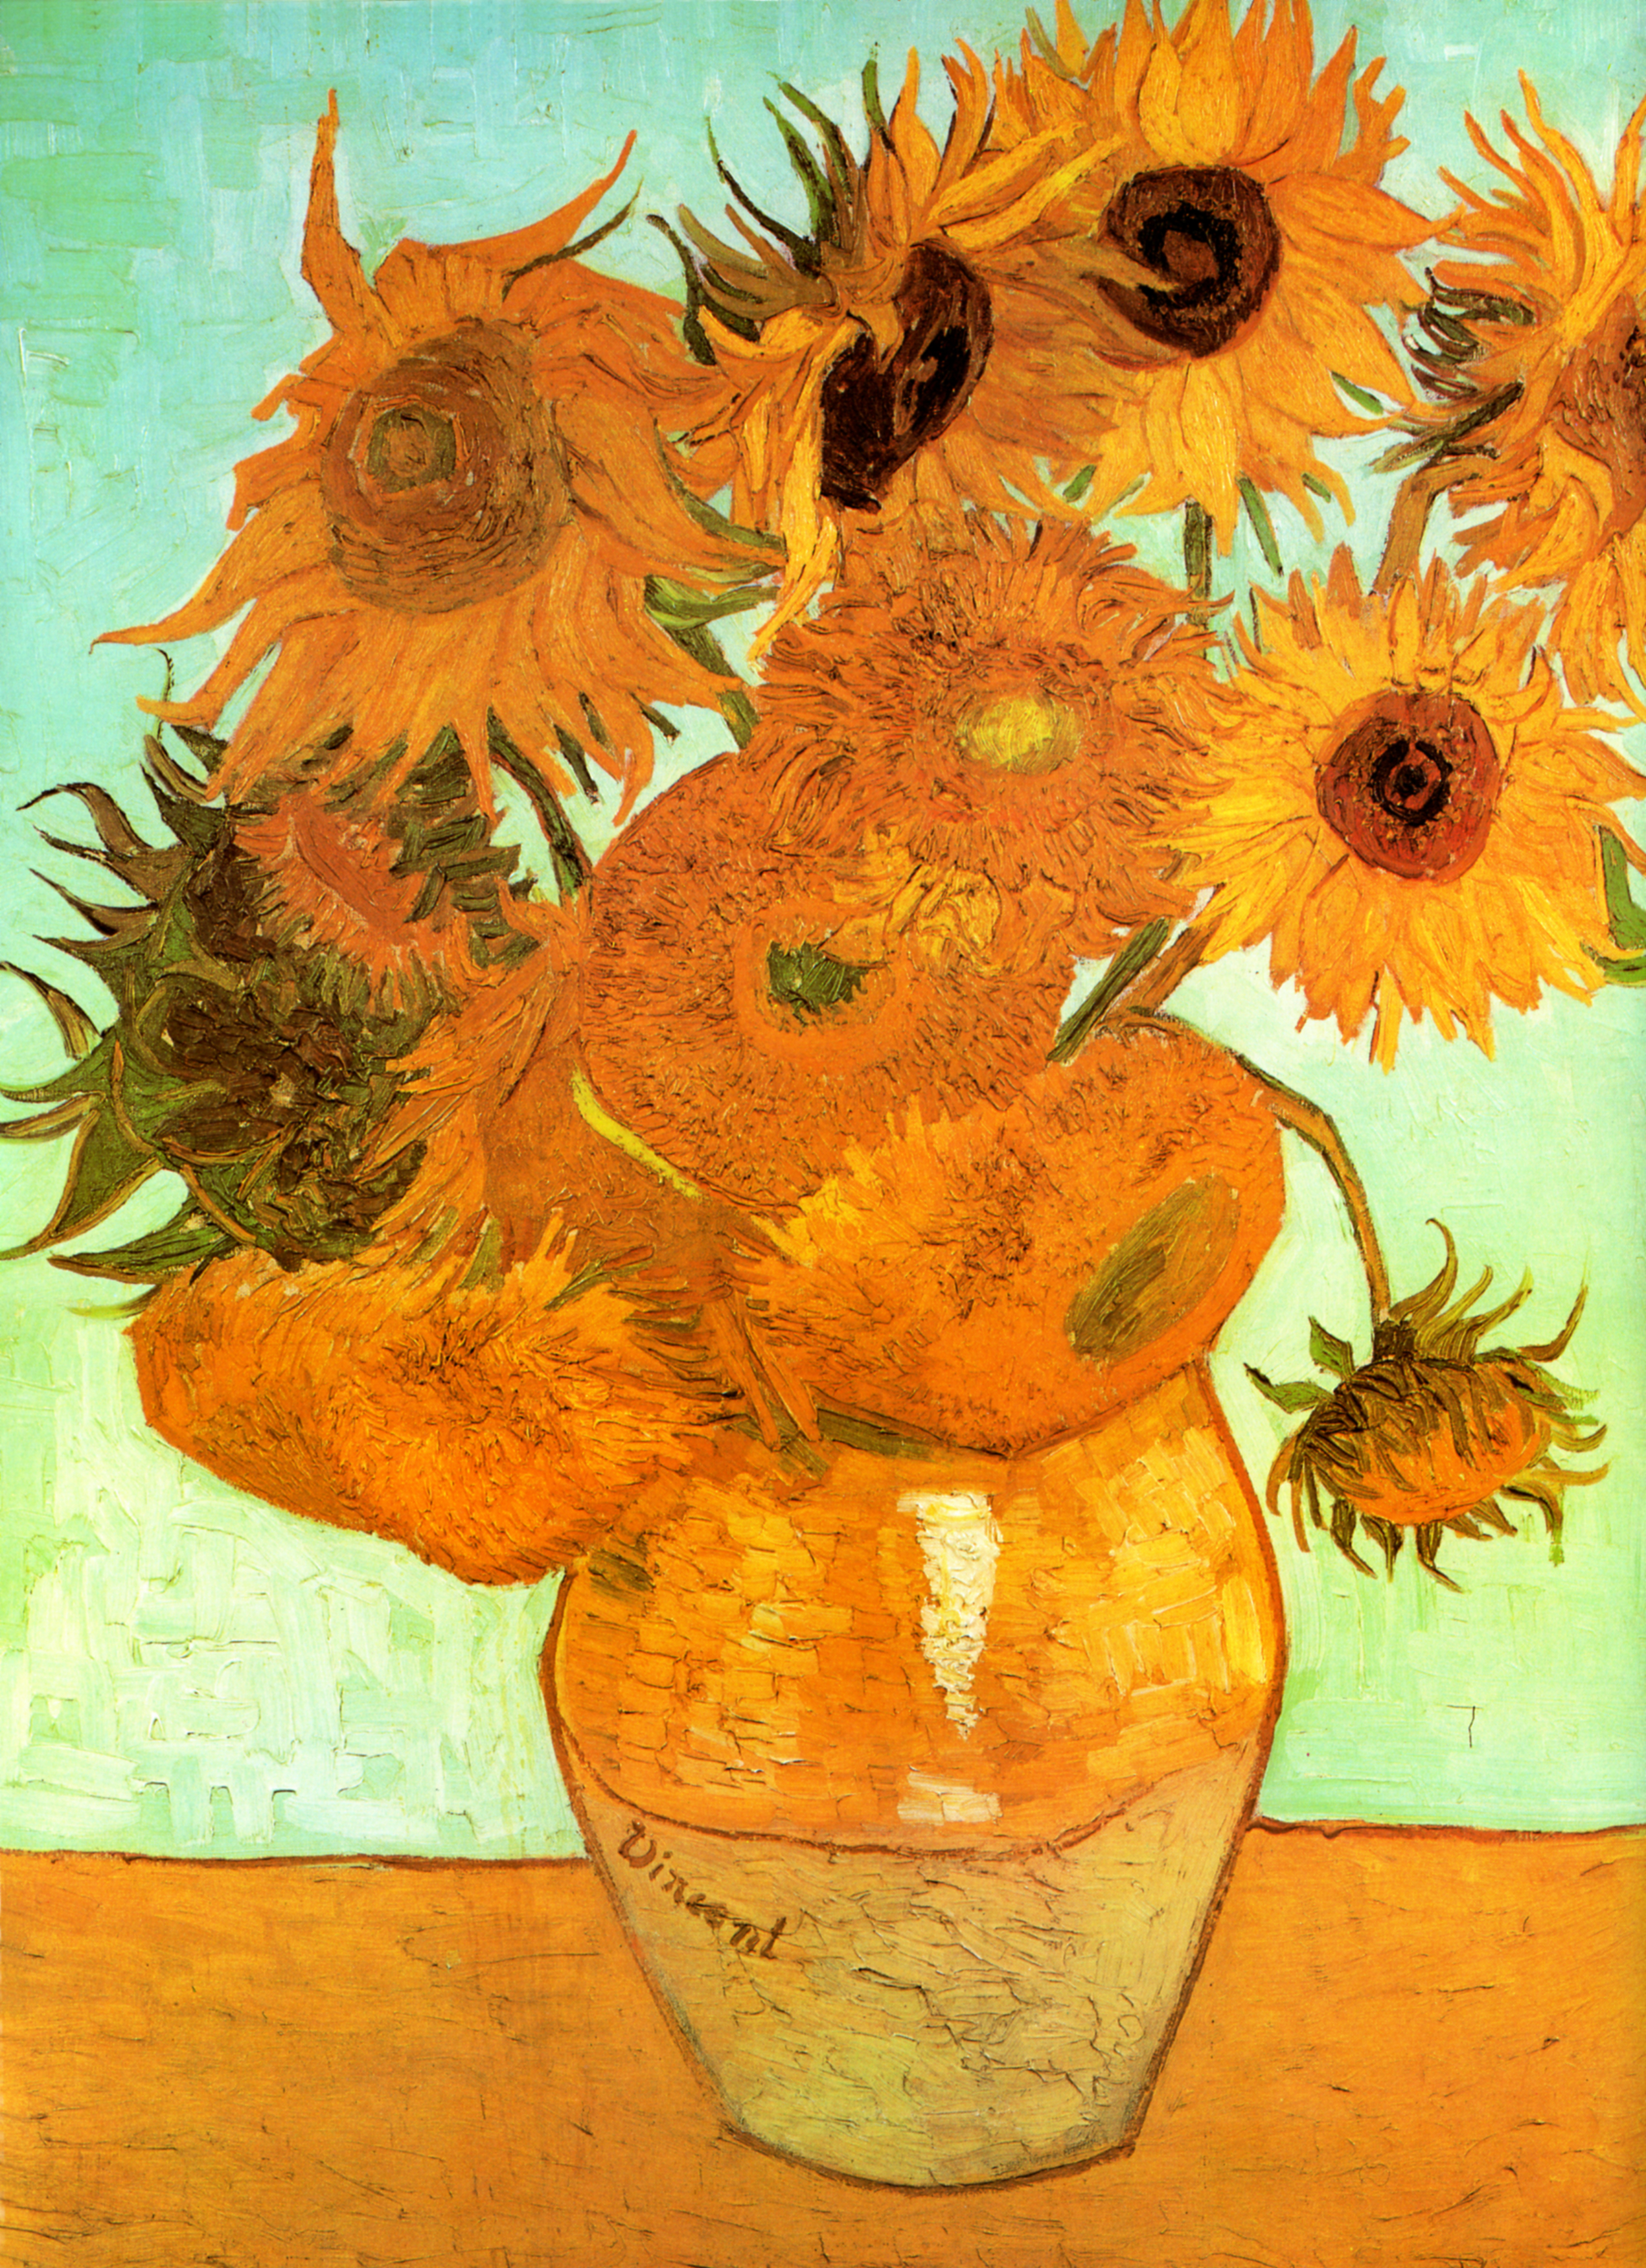 Vincent van Gogh - Werke, Bilder und Gemälde